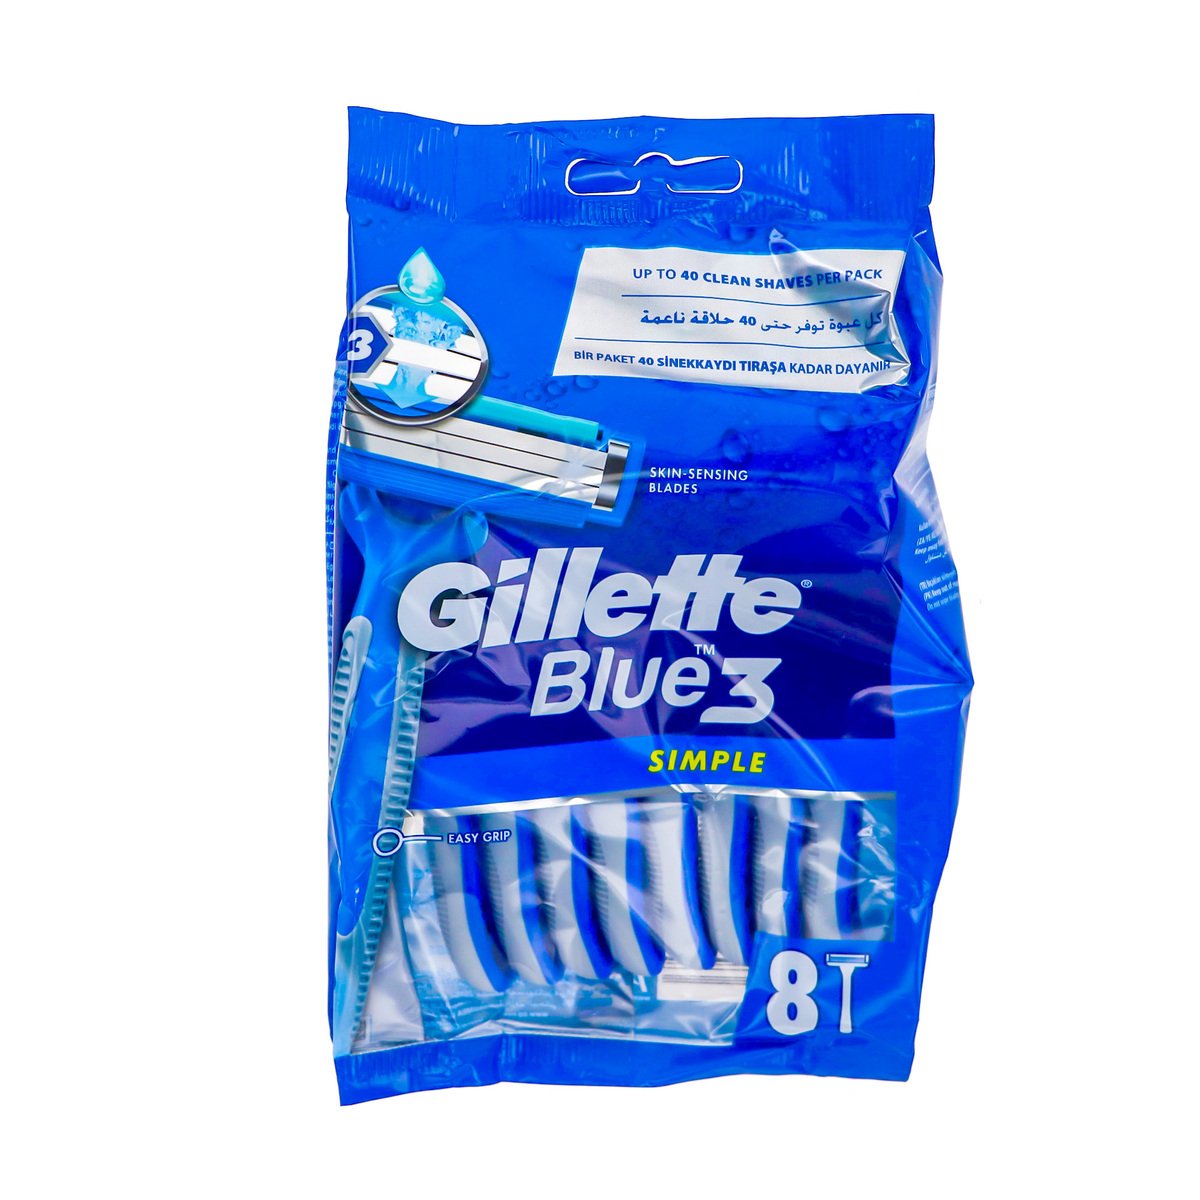 Gillette Razor Blue 3 Simple 8pcs